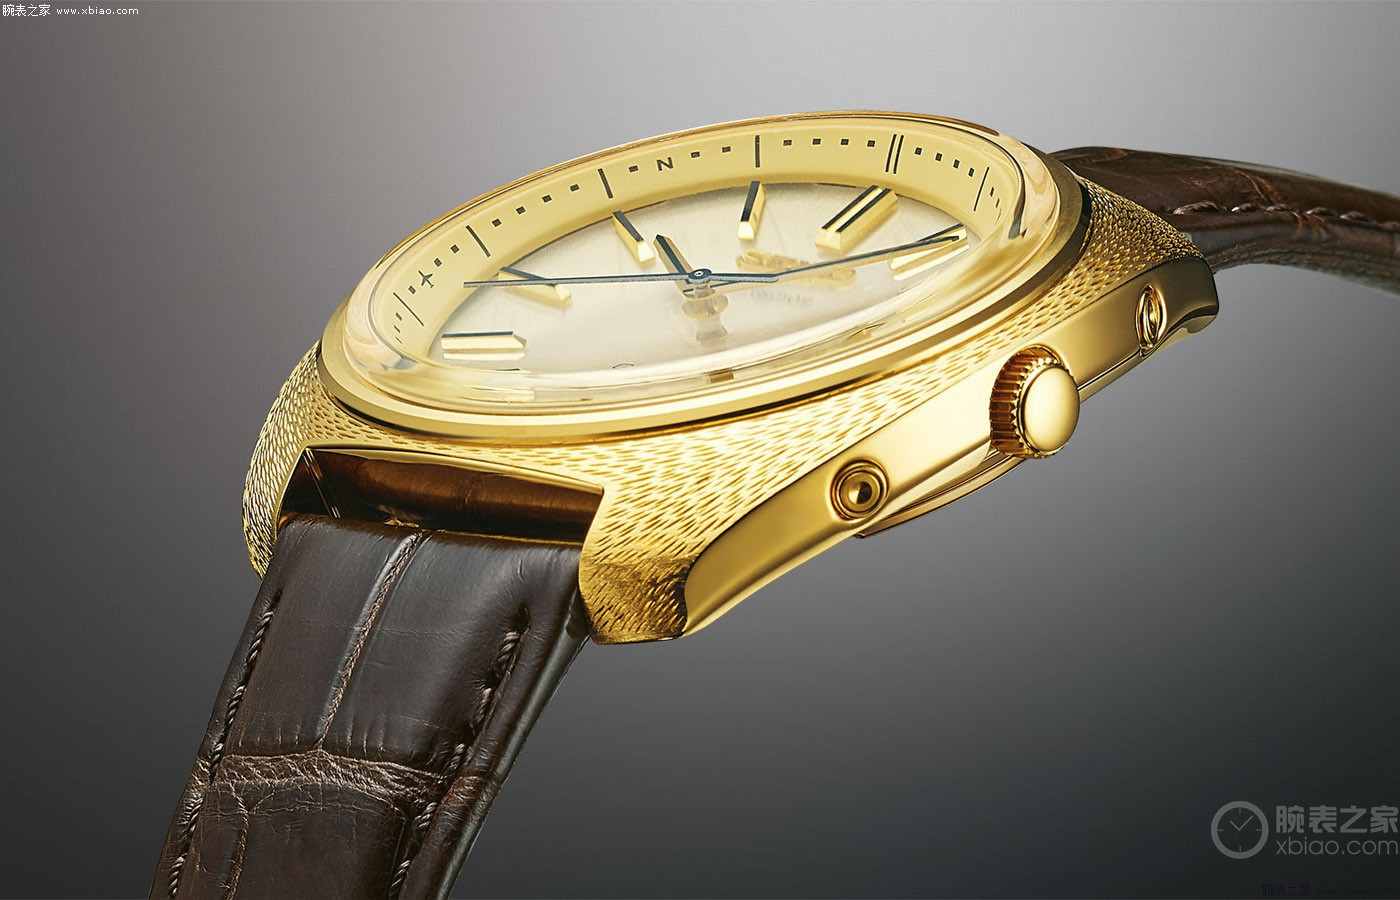 精工推出1969 Quartz Astron 50周年限量腕表